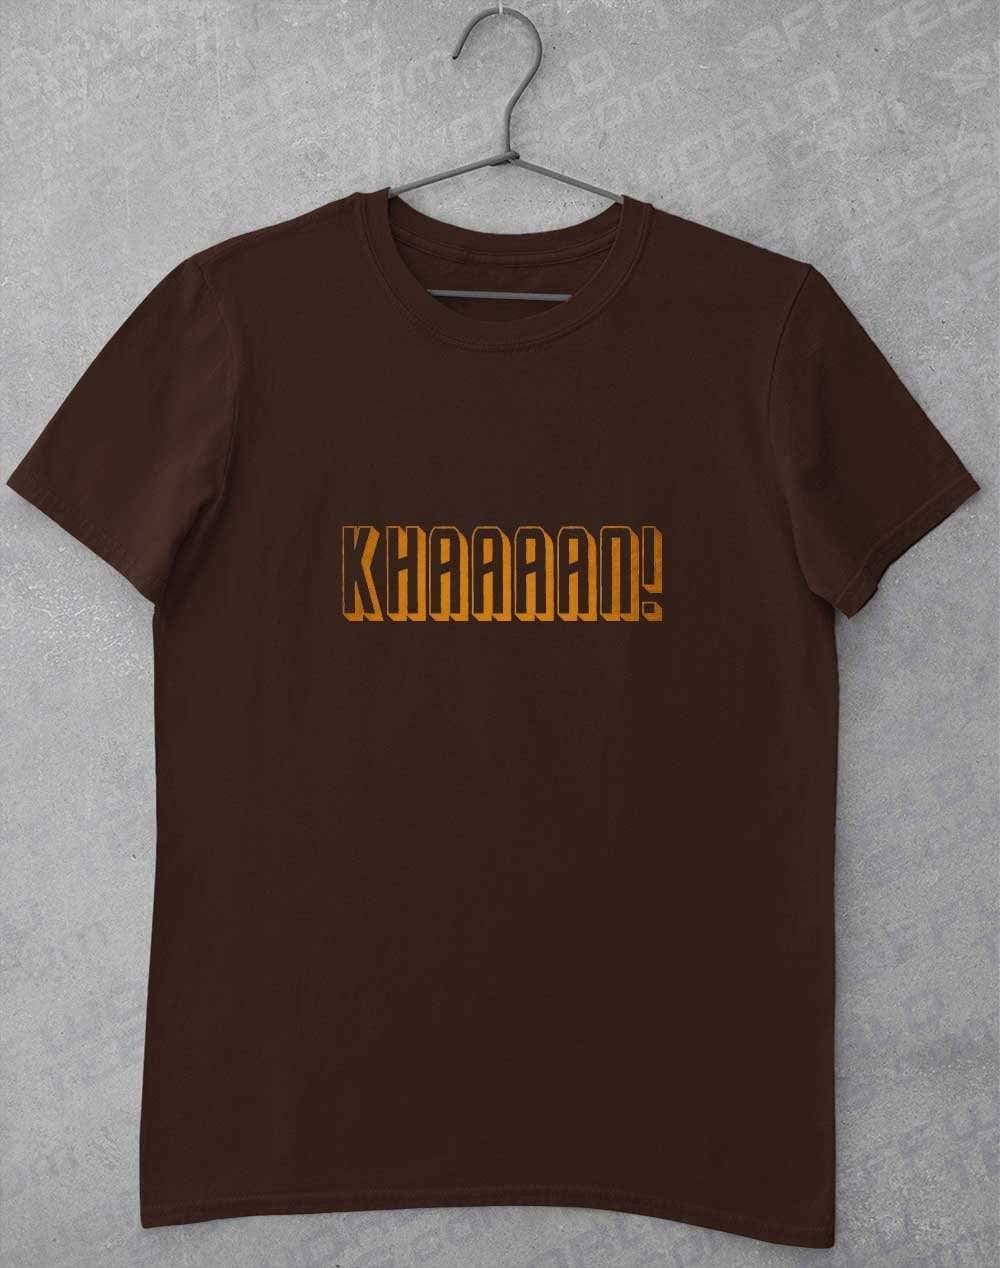 KHAAAAAN T-Shirt S / Dark Chocolate  - Off World Tees